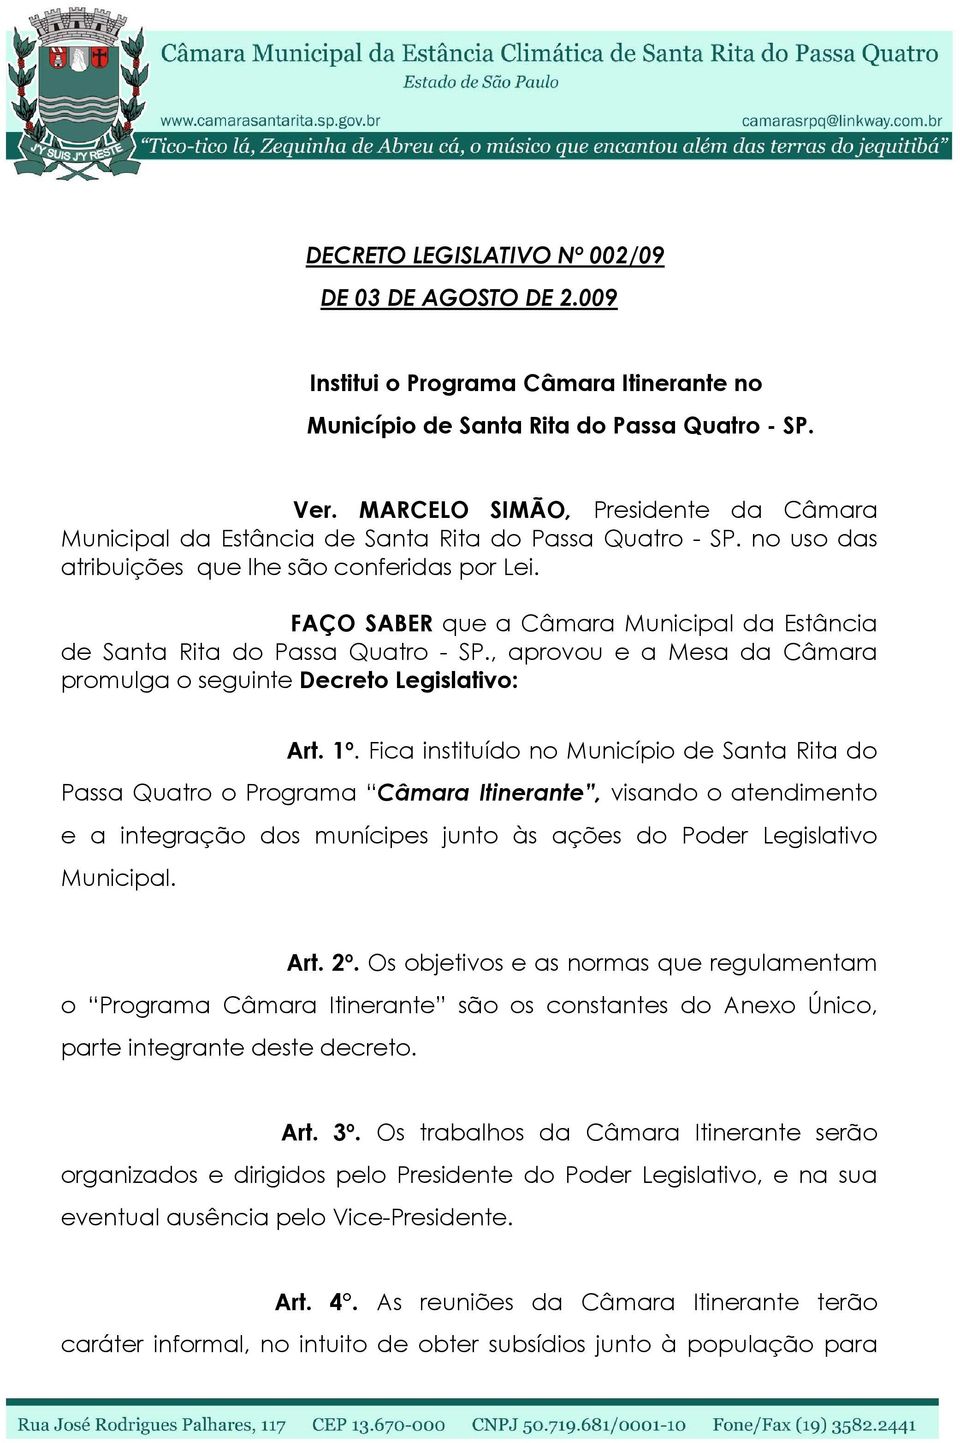 FAÇO SABER que a Câmara Municipal da Estância de Santa Rita do Passa Quatro - SP., aprovou e a Mesa da Câmara promulga o seguinte Decreto Legislativo: Art. 1º.